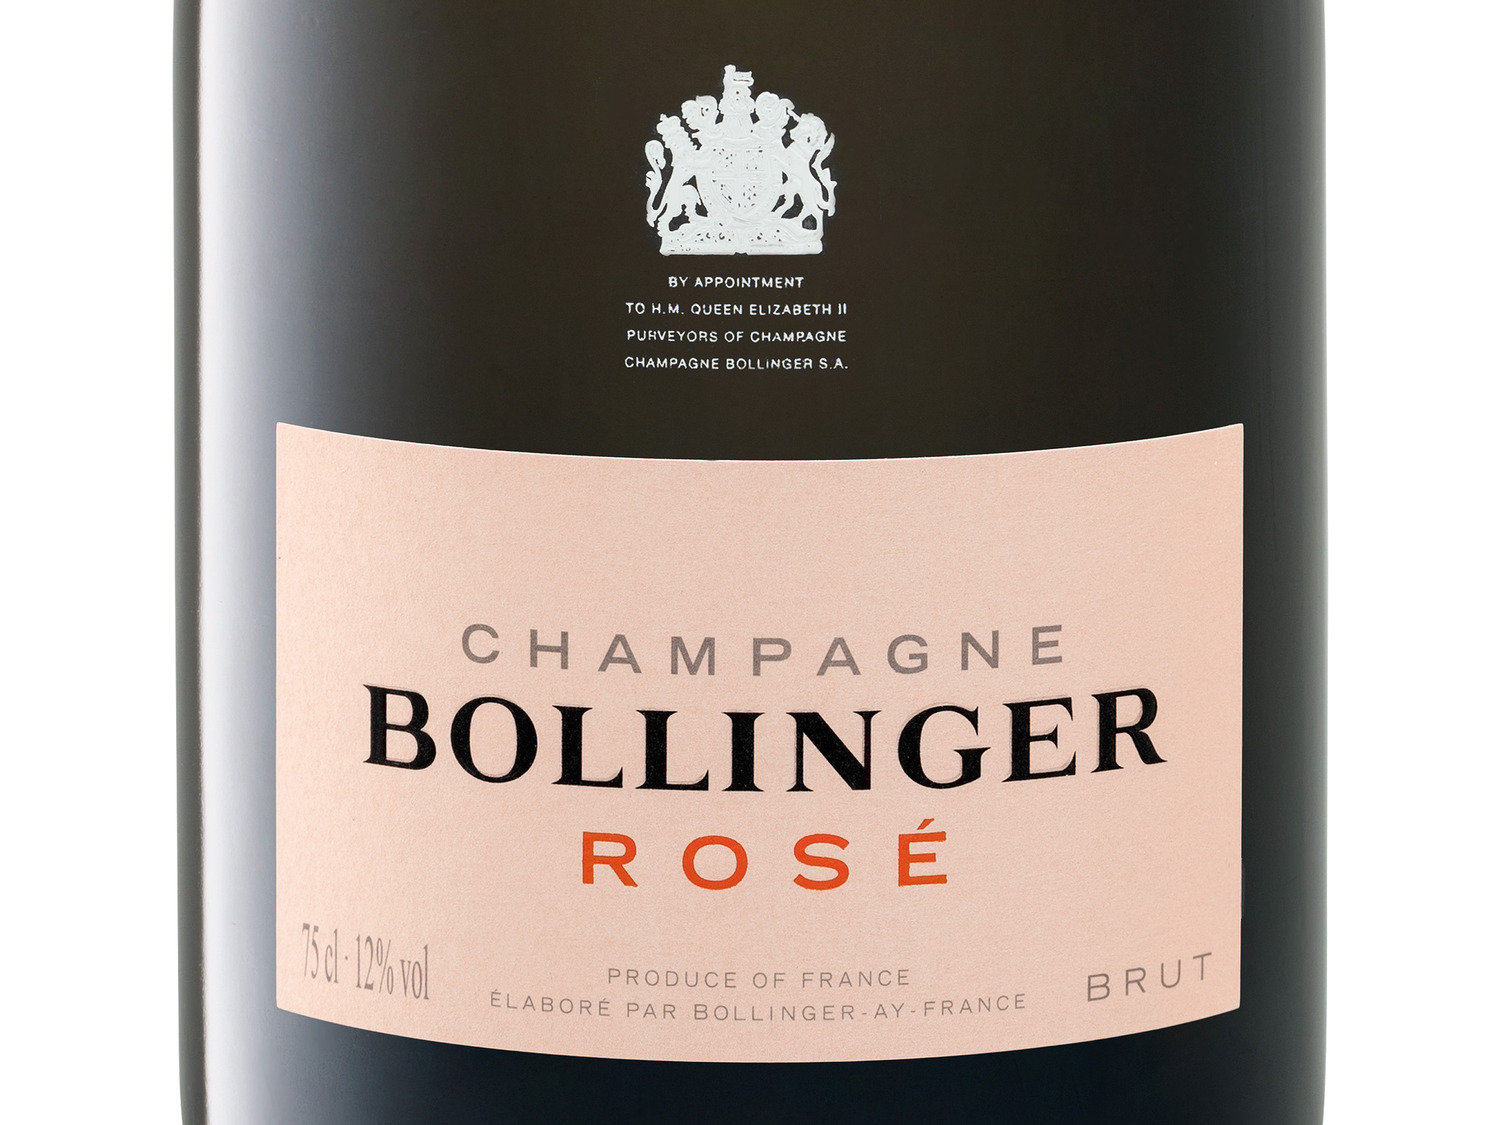 Bollinger Rosé brut mit Geschenkbox, Champagner | LIDL